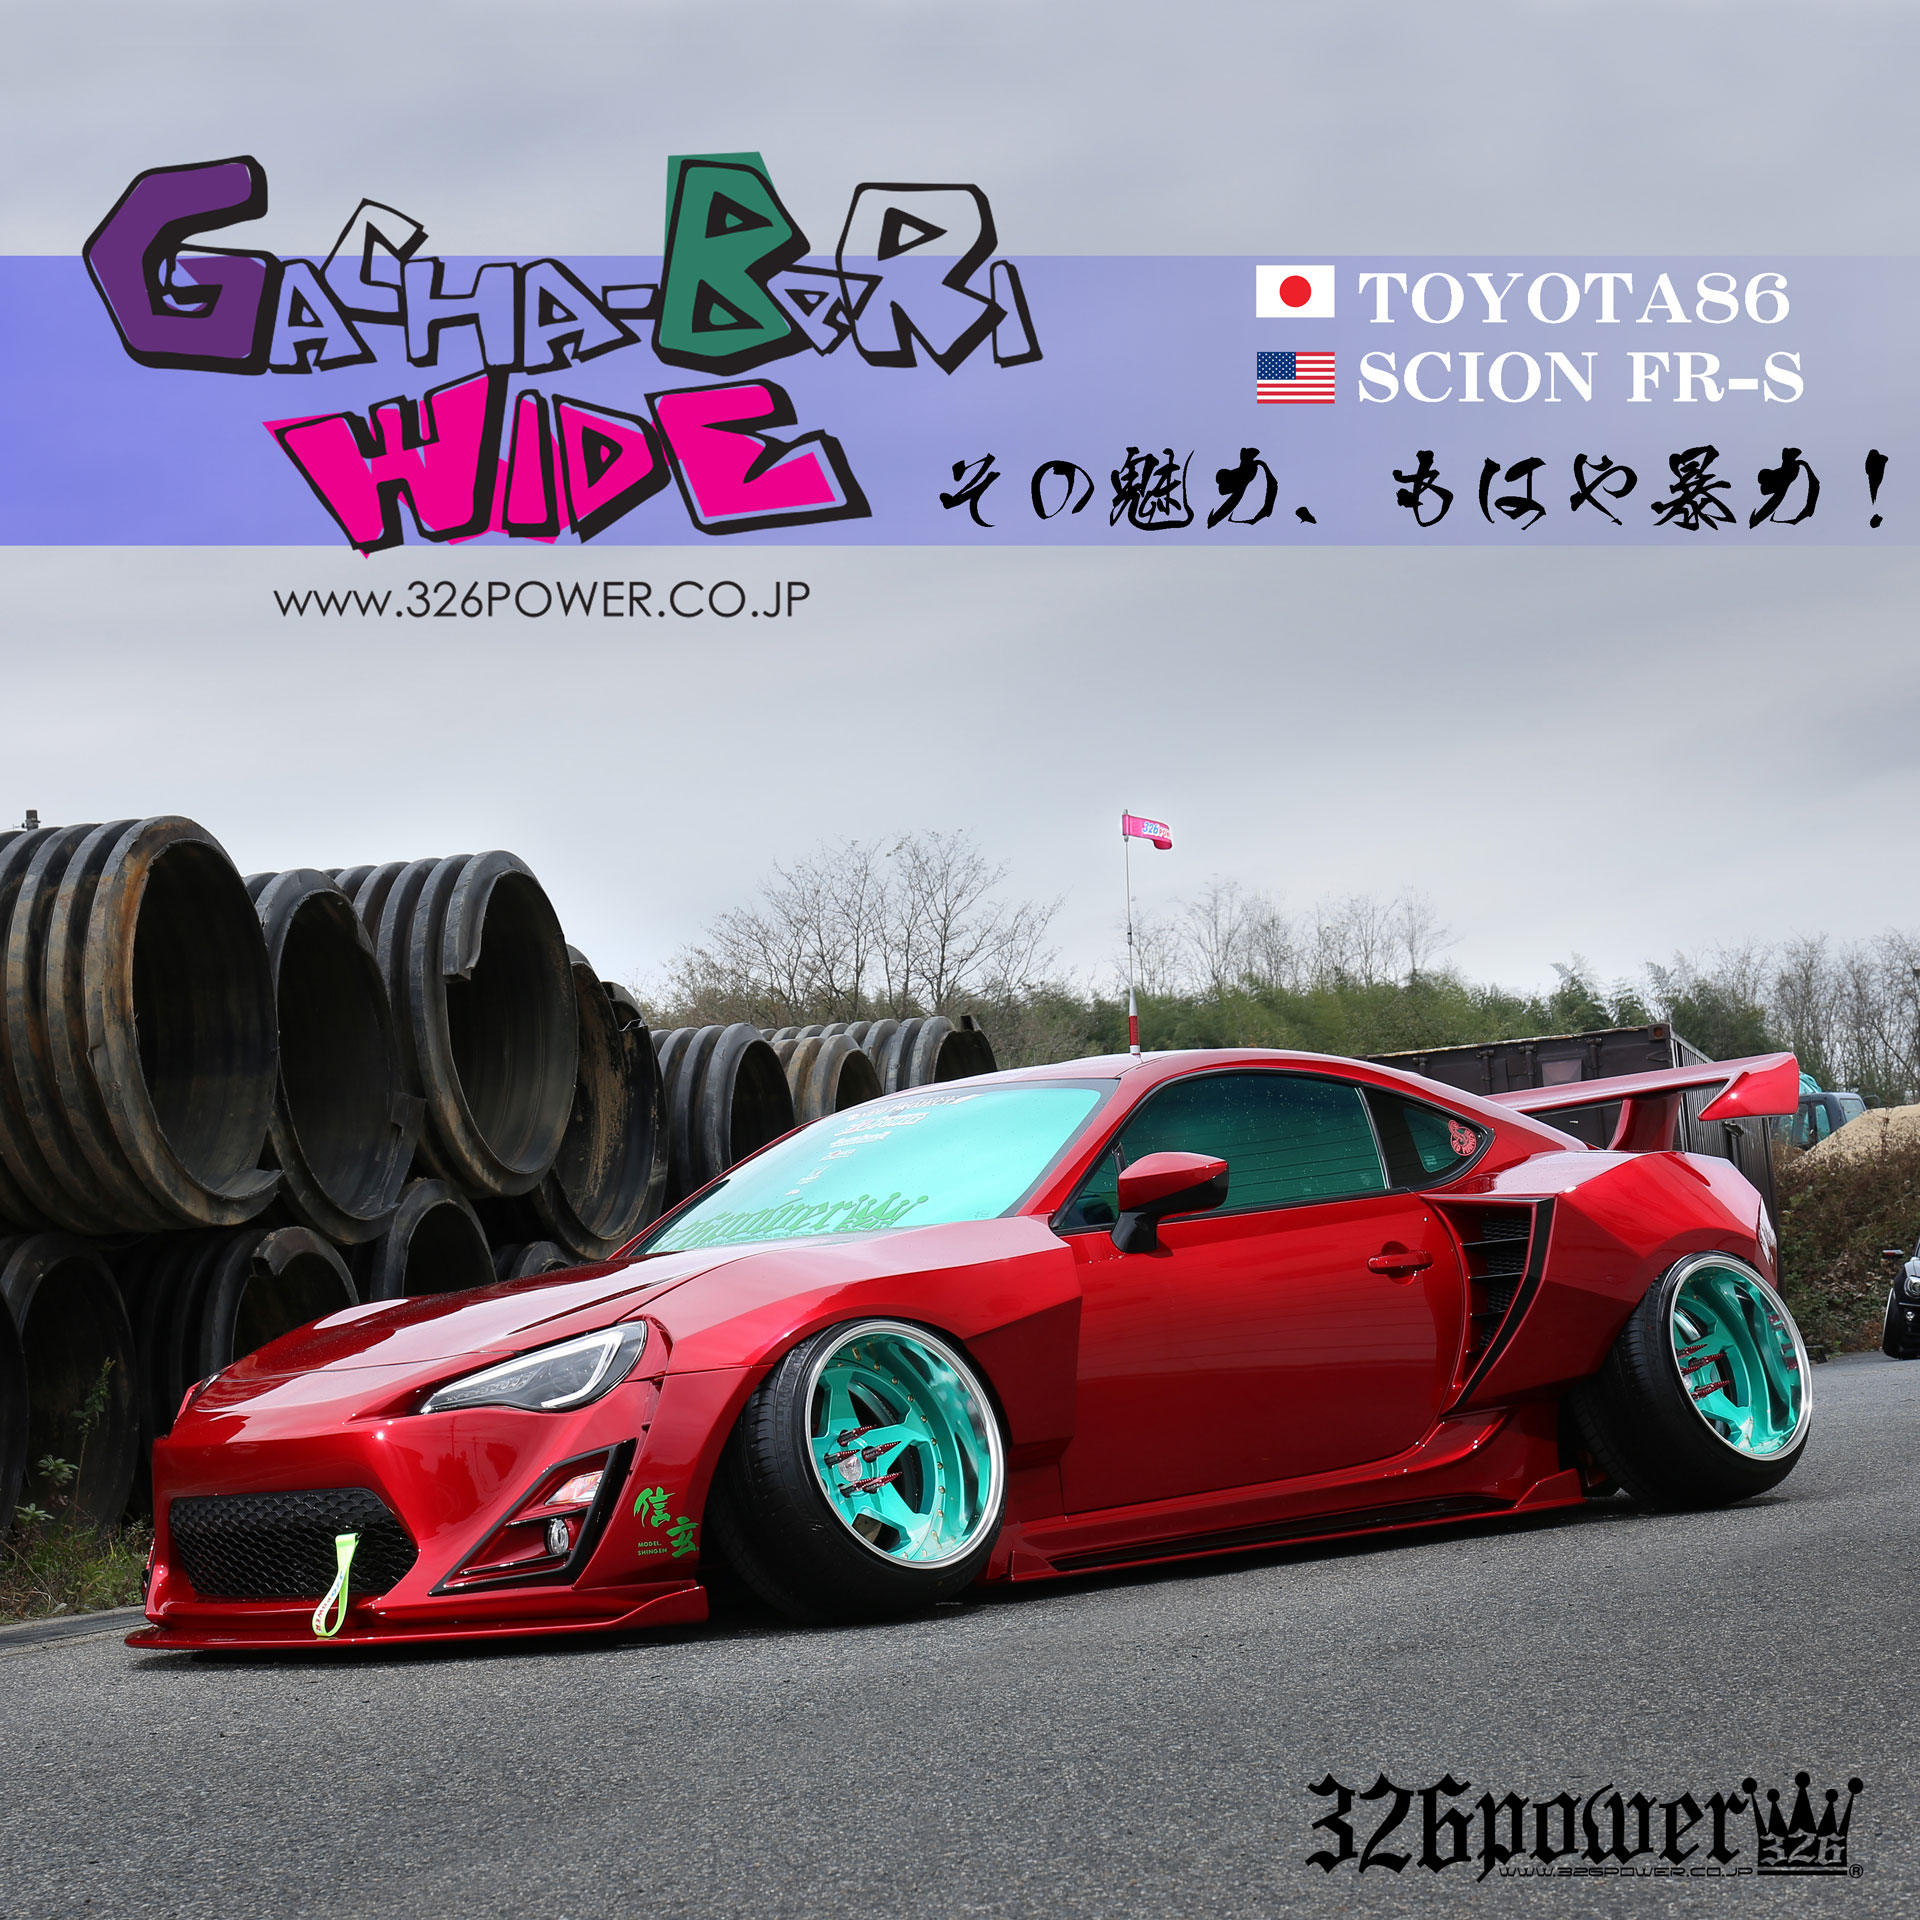 326 Power - Gachyabari WIDE - Toyota 86